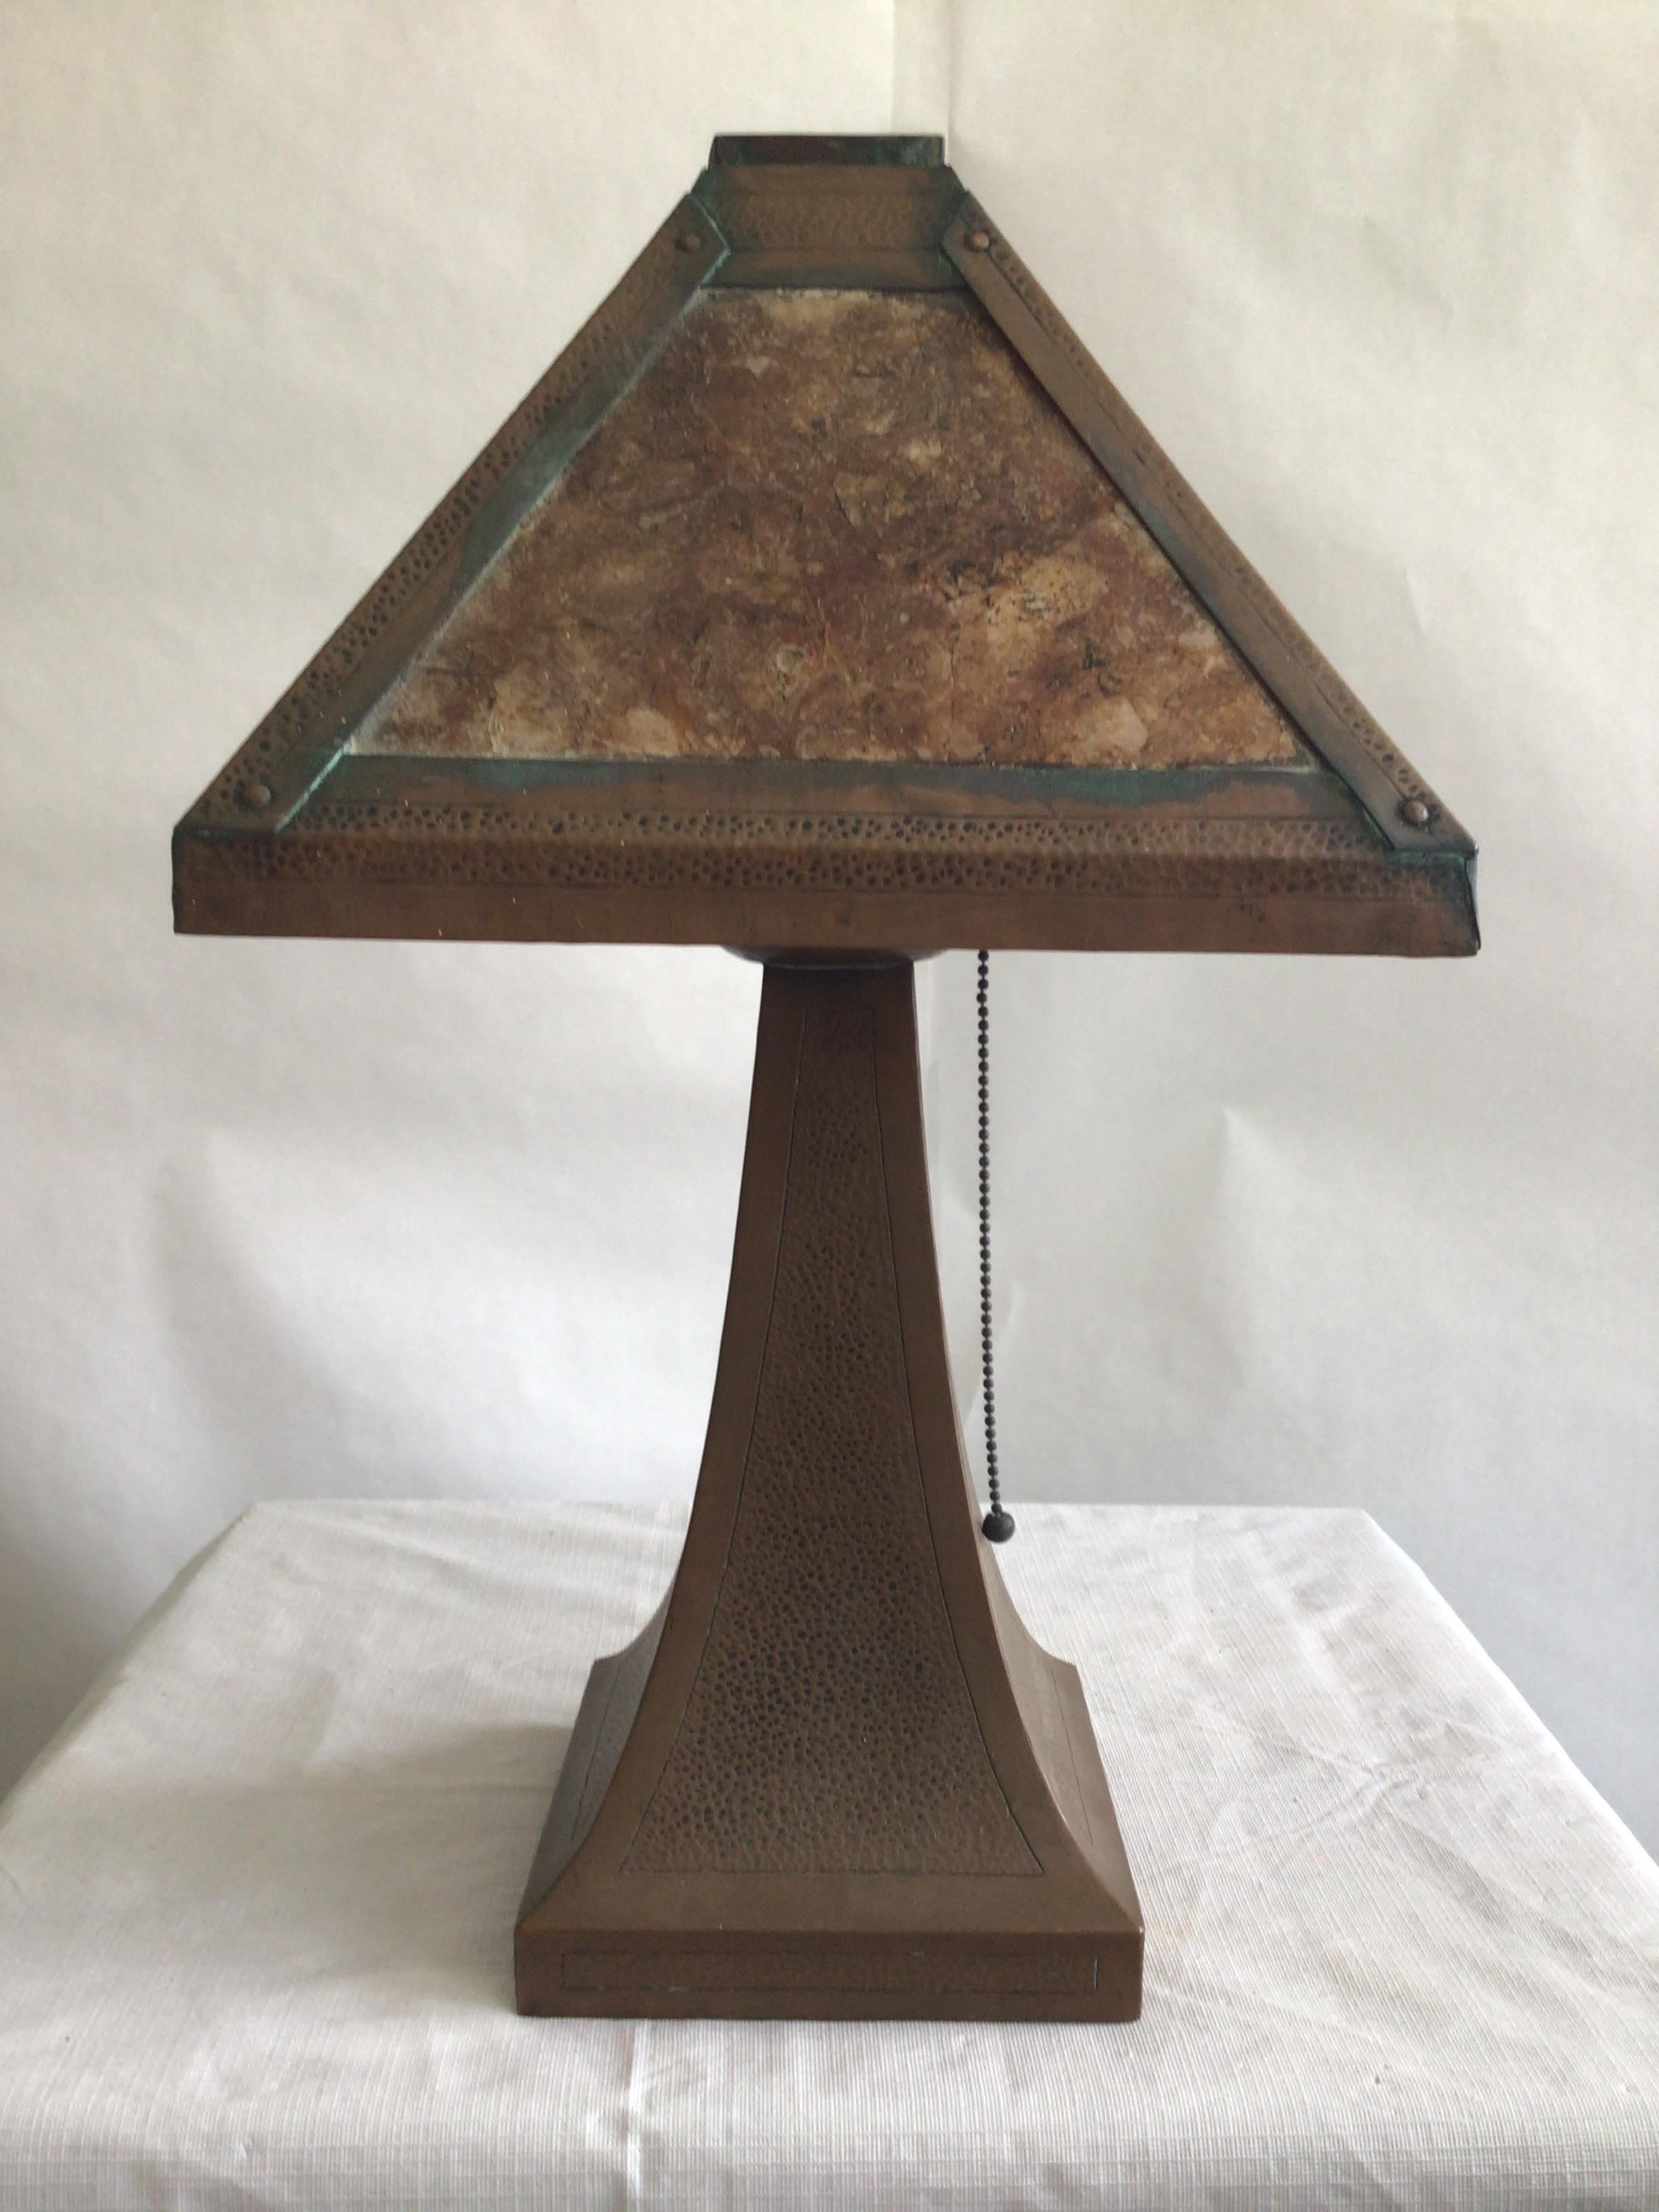 Lampe de table Arts and Crafts des années 1920 avec abat-jour en mica
Le poids total est plus léger car il s'agit de cuivre et d'une fine pierre de mica.
Le cuivre martelé à la main est éblouissant sur cette lampe Arts & Crafts.
Très bon état pour